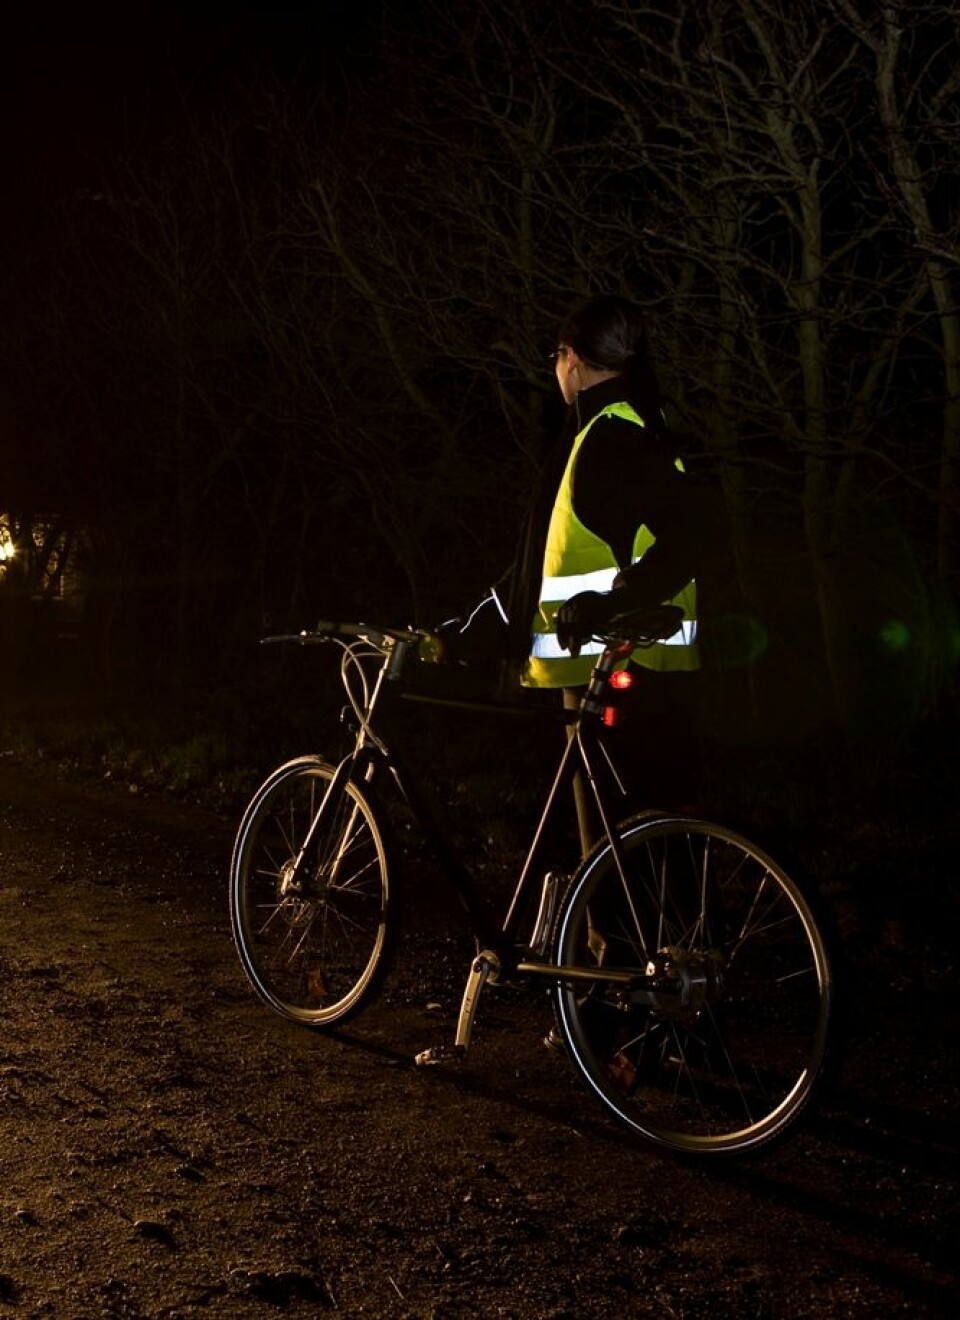 Syklister kan være vanskelige å se i mørket, særlig uten refleks. Da er det et poeng å gi bilistene best mulig sjanse til å oppdage dem. (Foto: Colourbox)